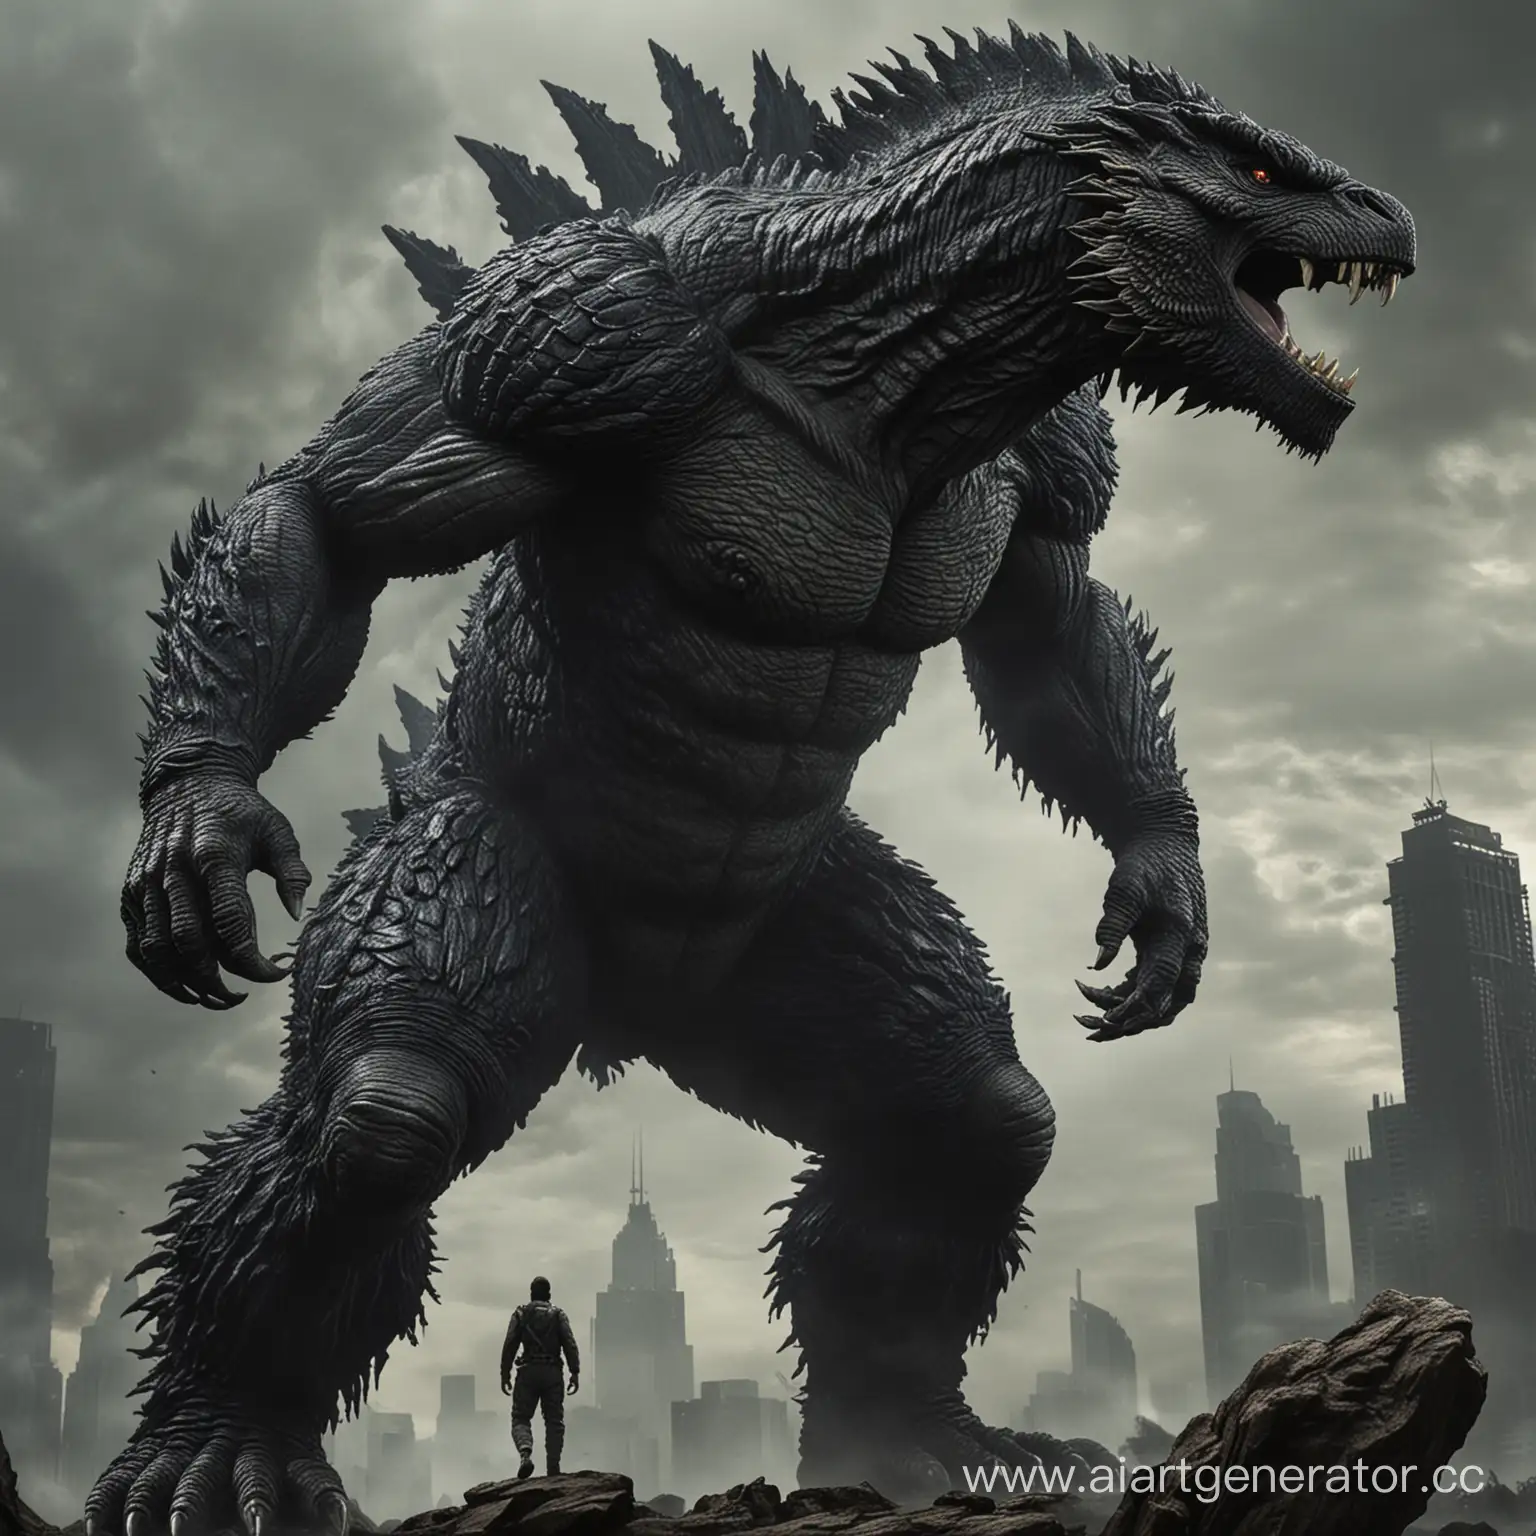 Colossal-Battle-Godzilla-and-King-Kong-in-Urban-Warfare